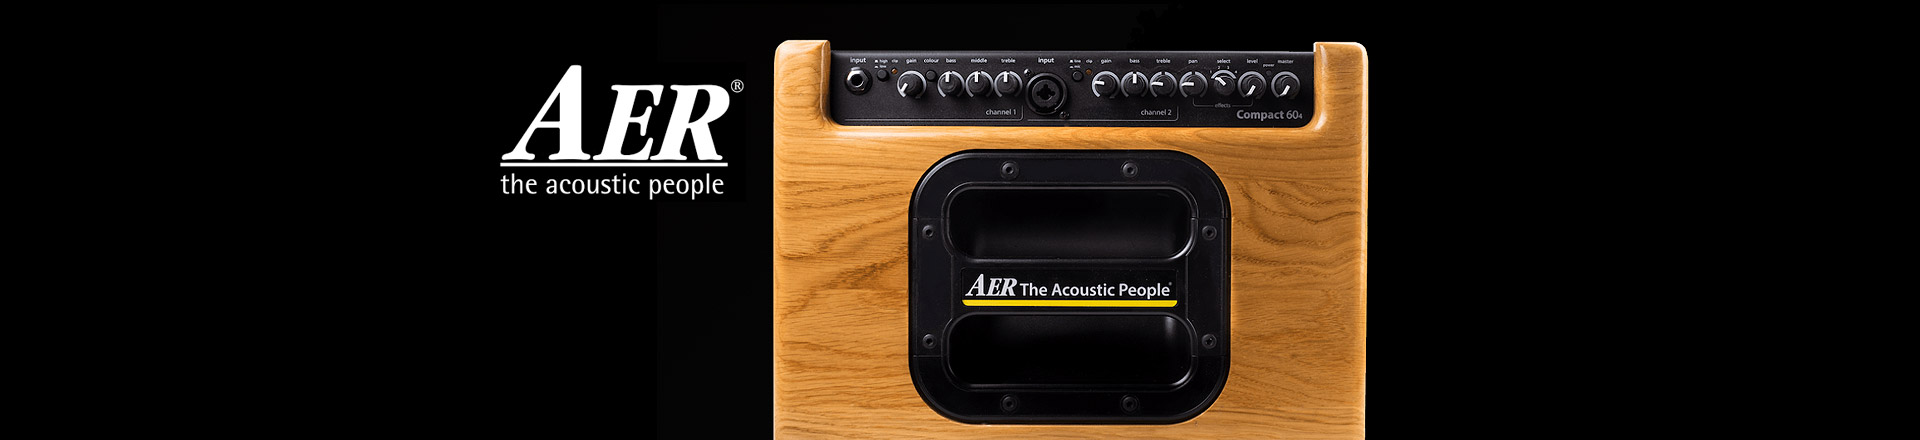 Aer Compact 60 IV: Najbardziej pożądane wzmacniacze do akustyka w nowej odsłonie